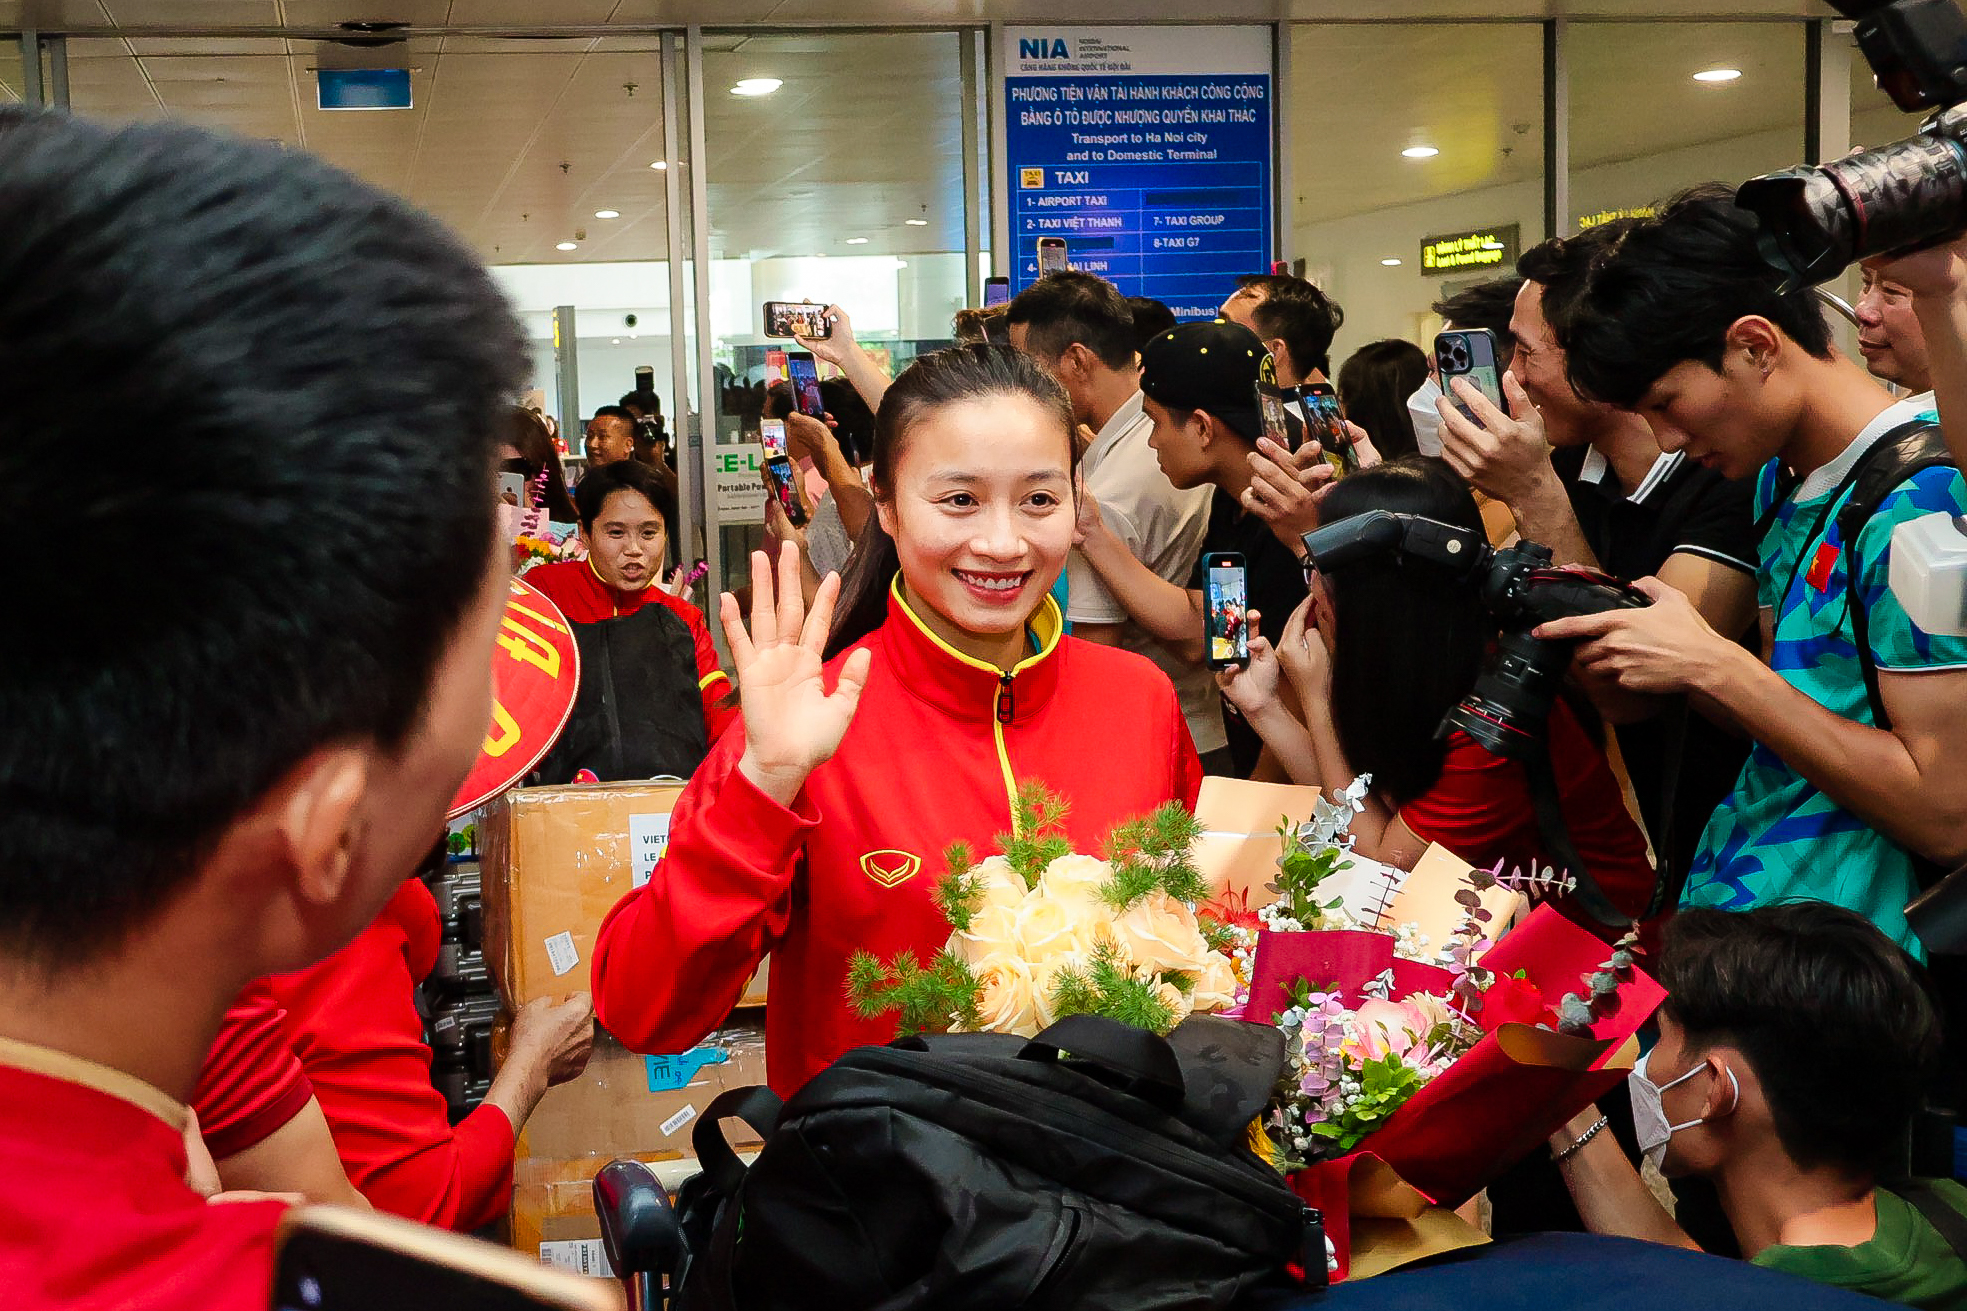 HLV Mai Đức Chung cùng nữ tuyển thủ rạng ngời trở về sau hành trình World Cup lịch sử - Ảnh 6.